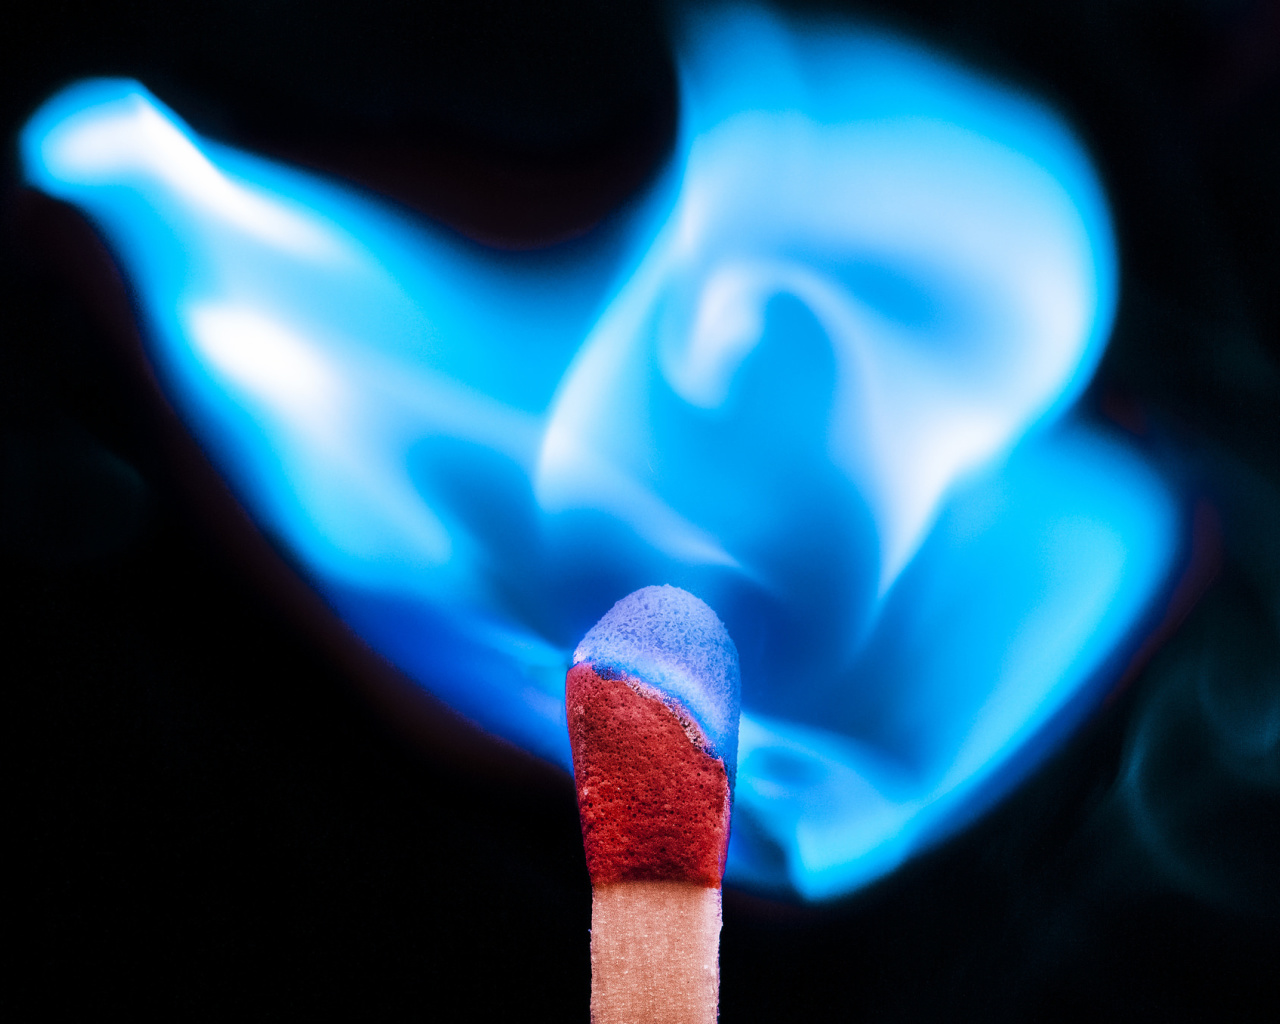 Das Blue flame match Wallpaper 1280x1024